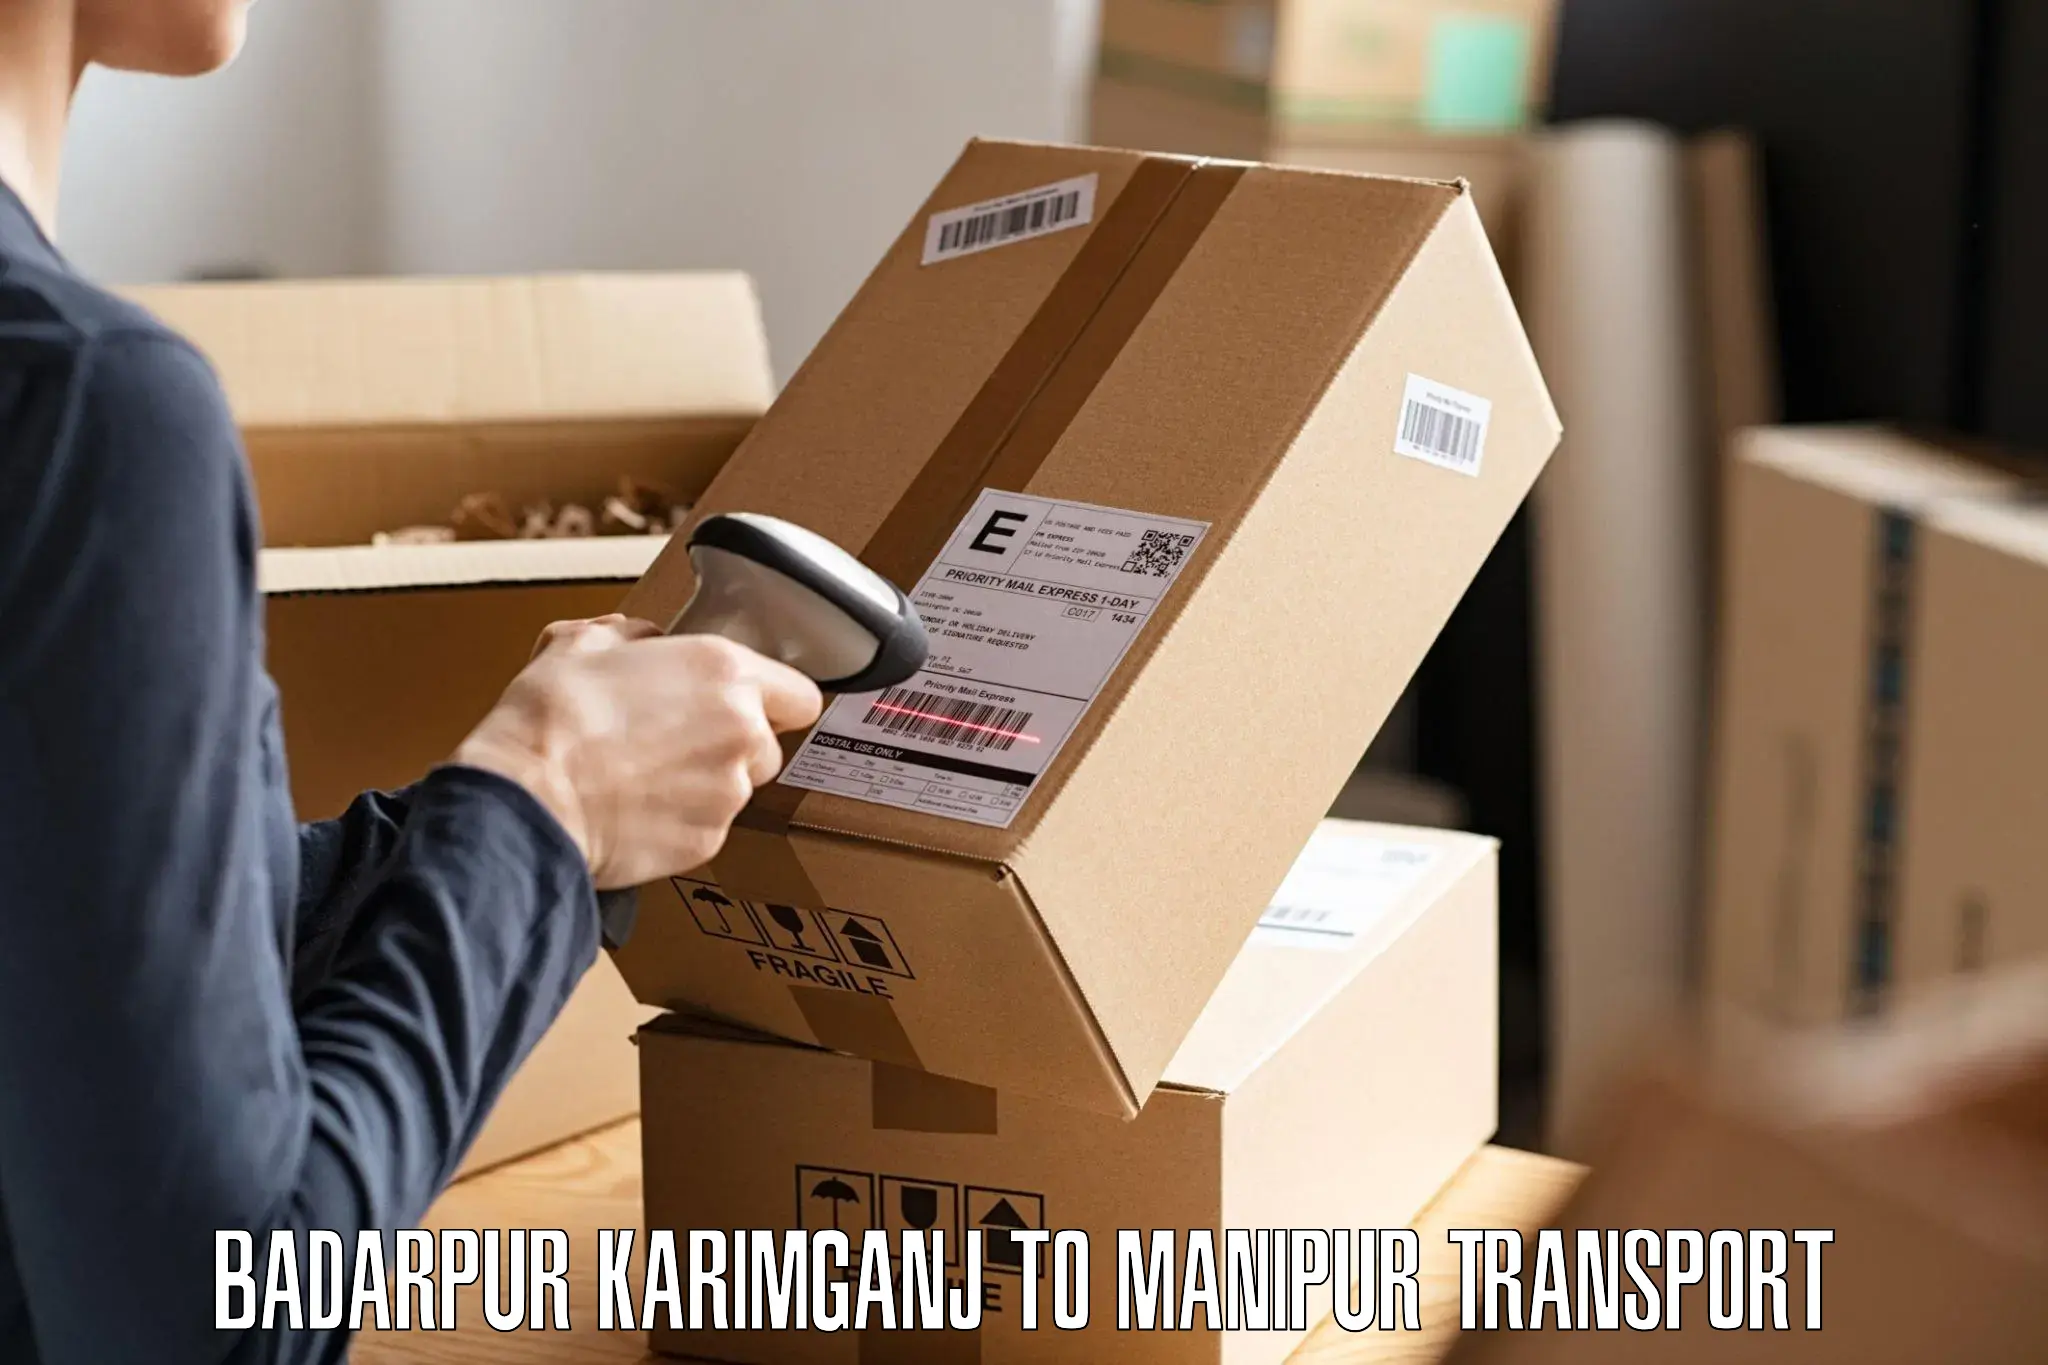 Furniture transport service Badarpur Karimganj to NIT Manipur